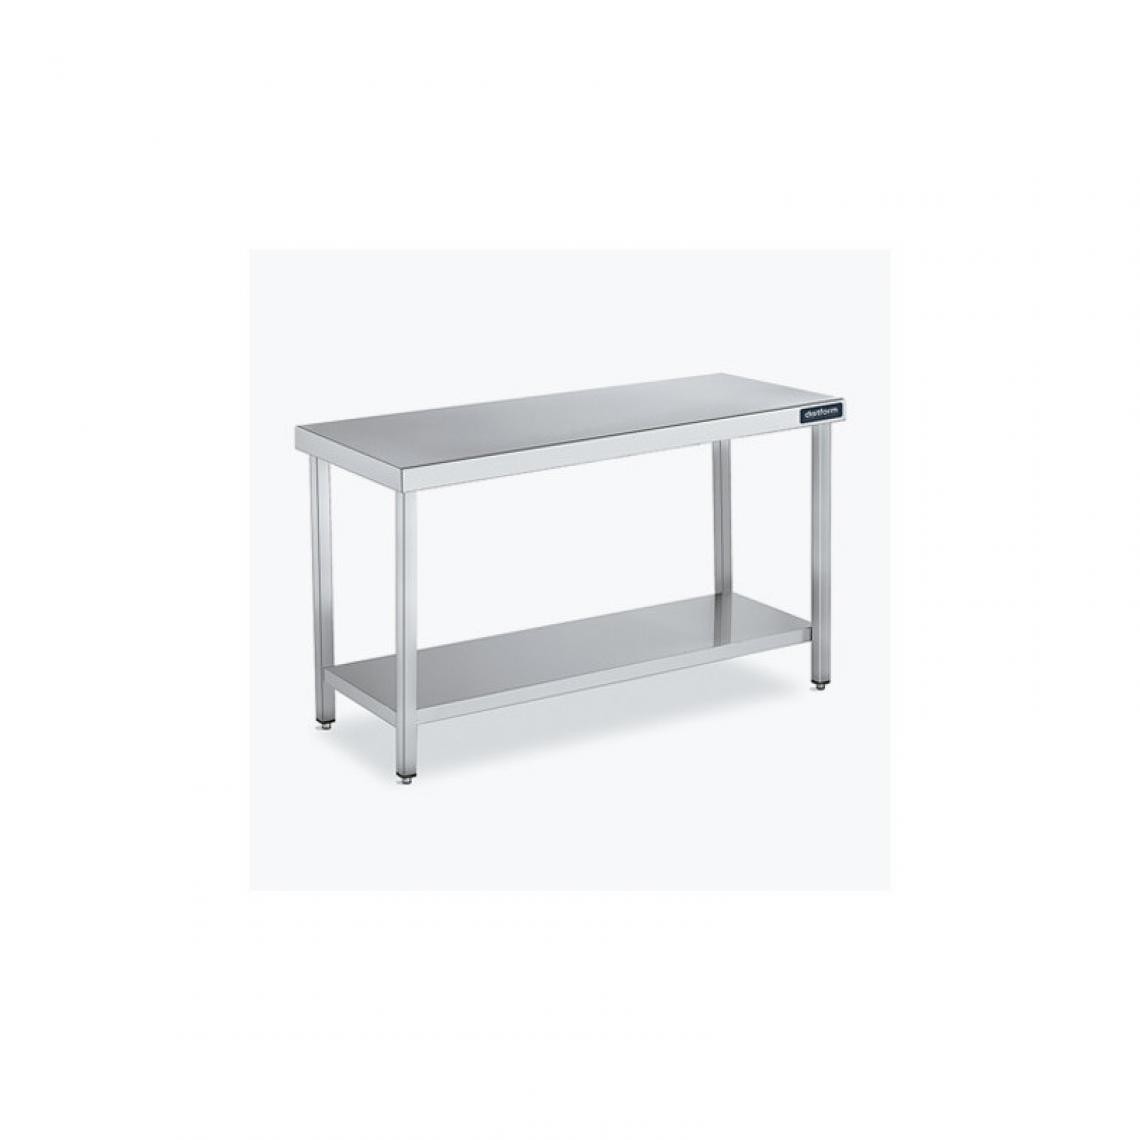 DISTFORM - Table Centrale 600x700 avec Étagère - Distform - Inox 18/101500x700x850mm - Tables à manger